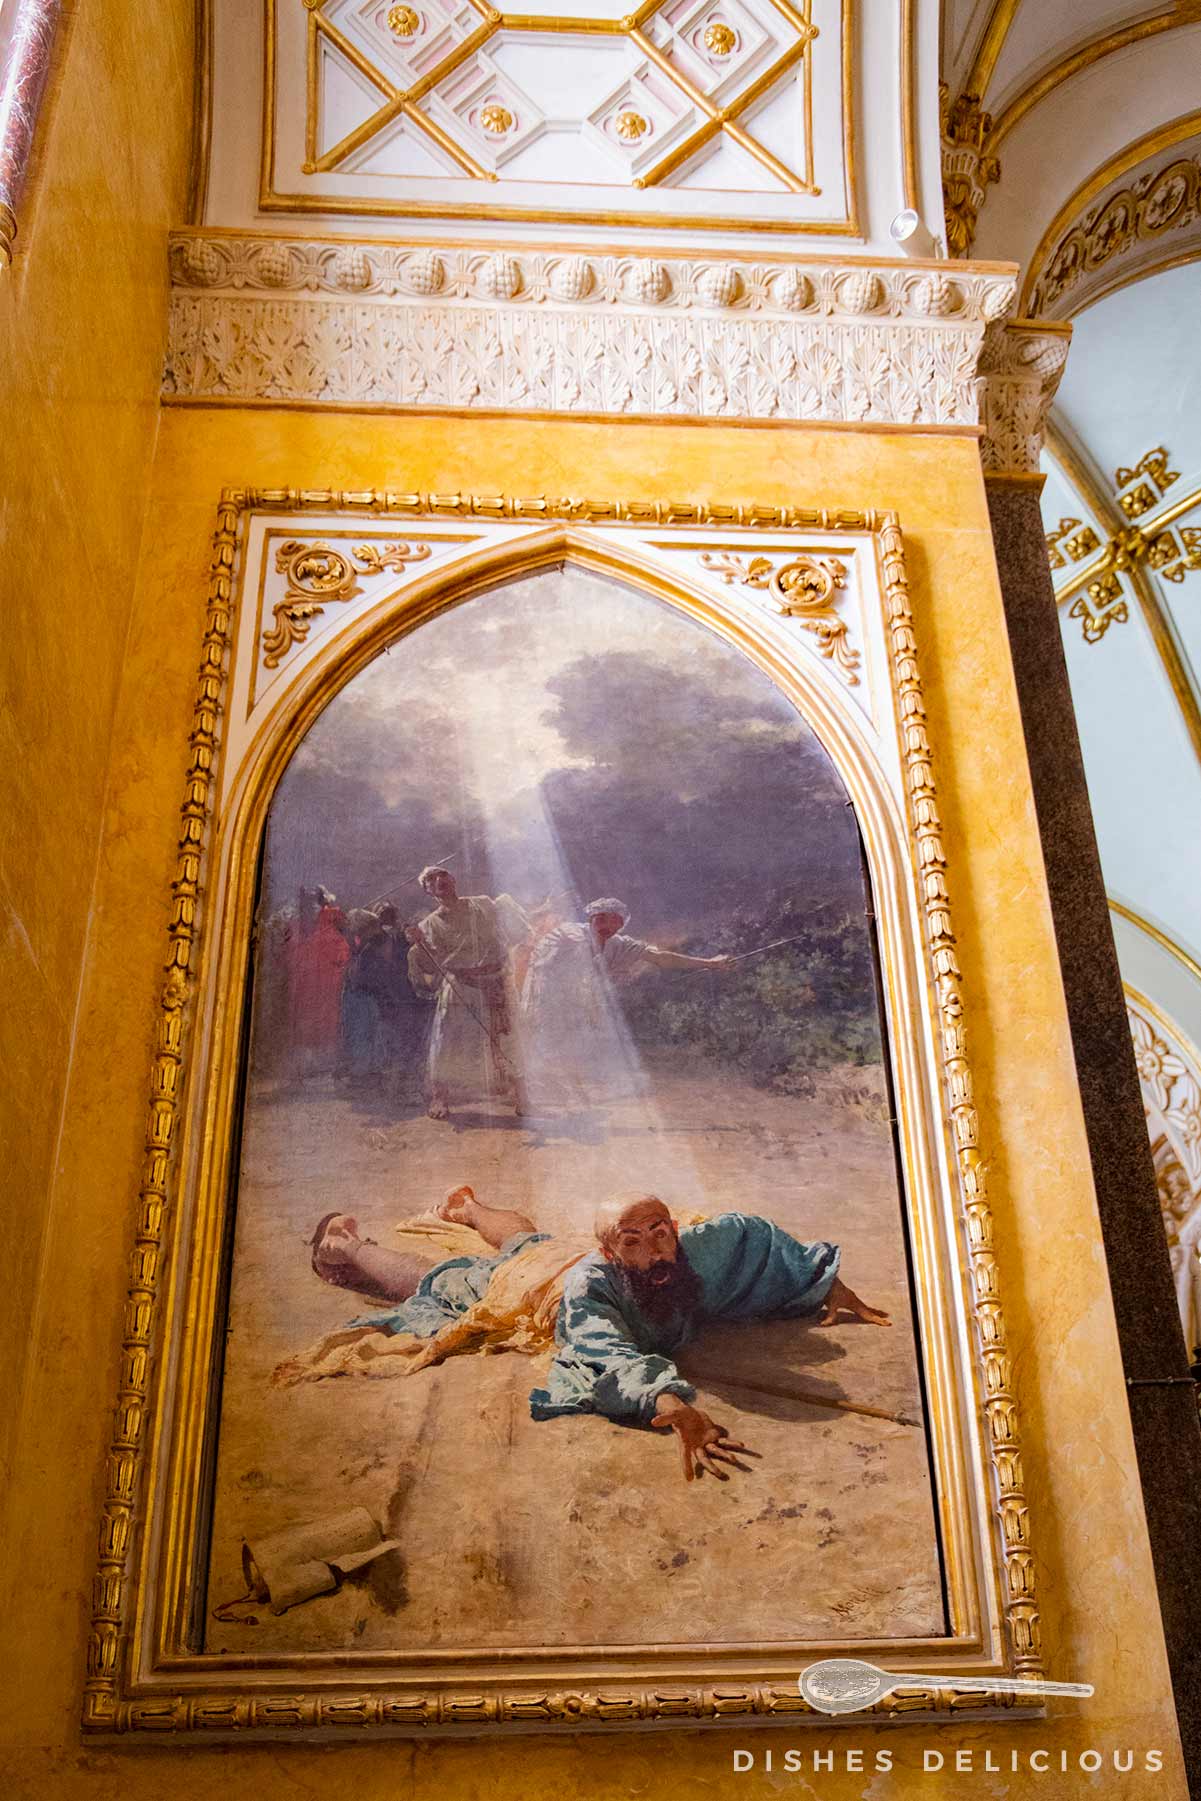 Gemälde in der Kathedrale, das den Heiligen Paolo auf dem Bauch am kahlen Boden liegend zeigt, während ein Sonnenstrahl auf ihn fällt.